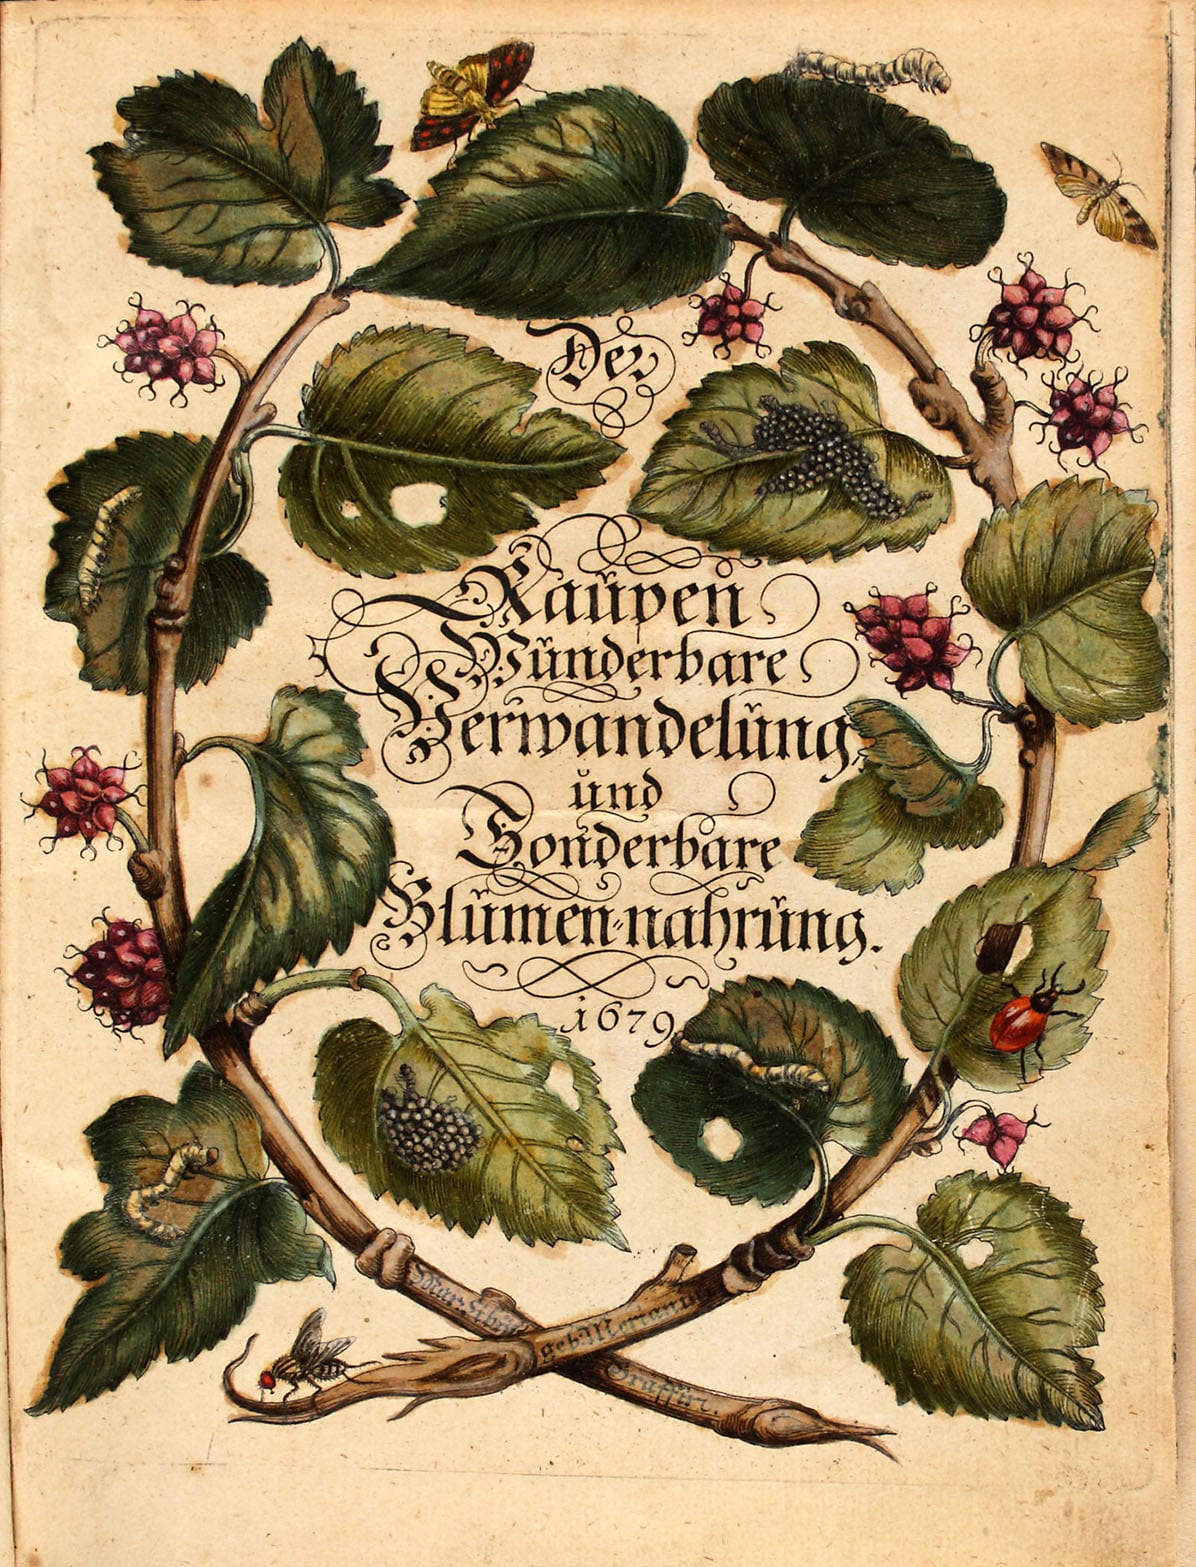 Maria Sibylla Merian: Der Raupen wunderbare Verwandelung und sonderbare Blumennahrung - Band 1 - Nürnberg, 1679